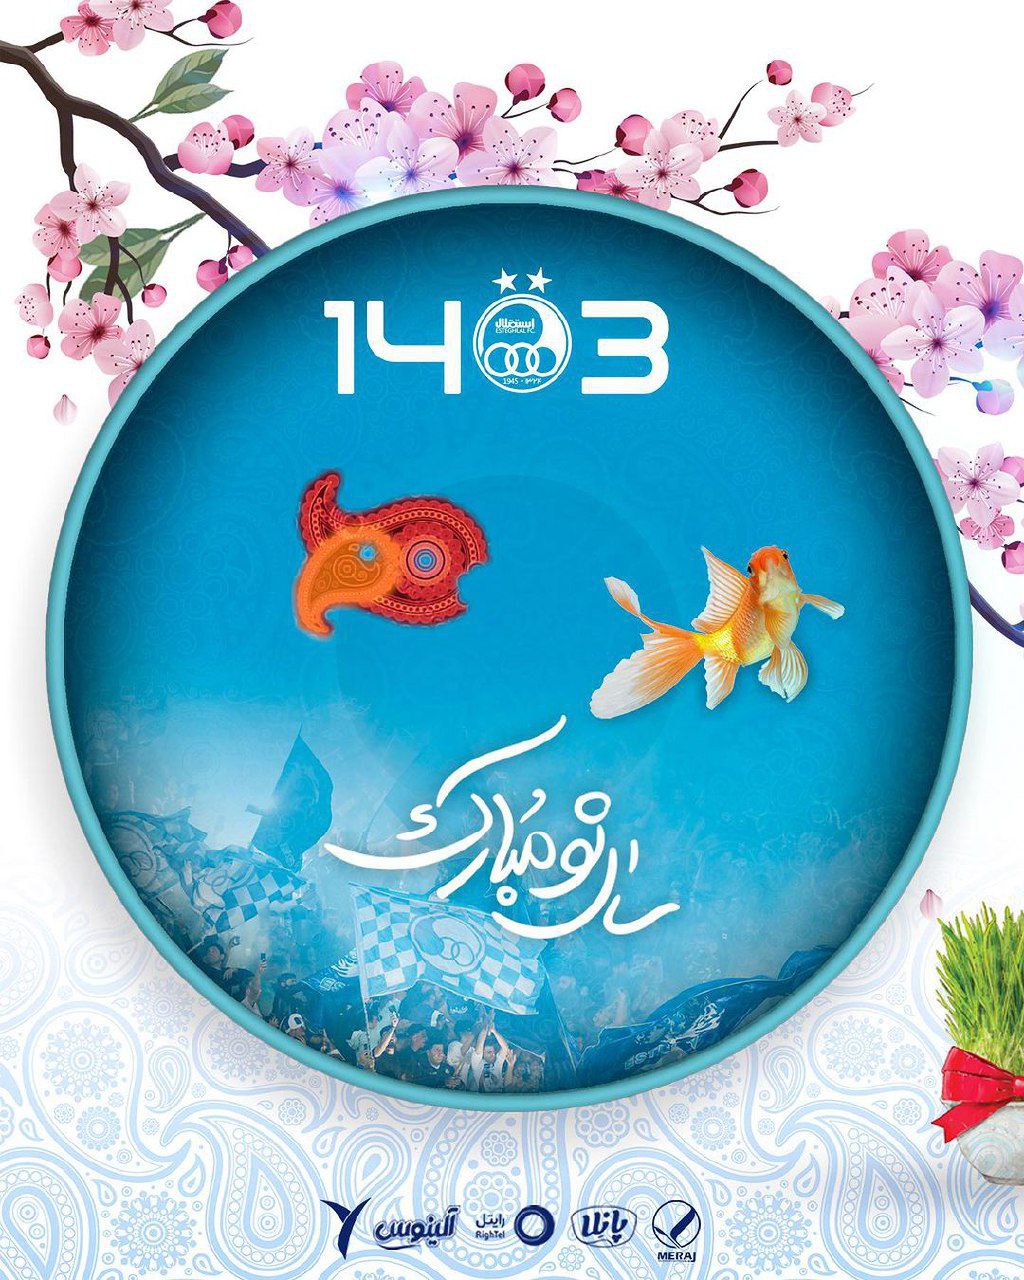 پوستر زیبا و جالب باشگاه استقلال برای تبریک سال نو